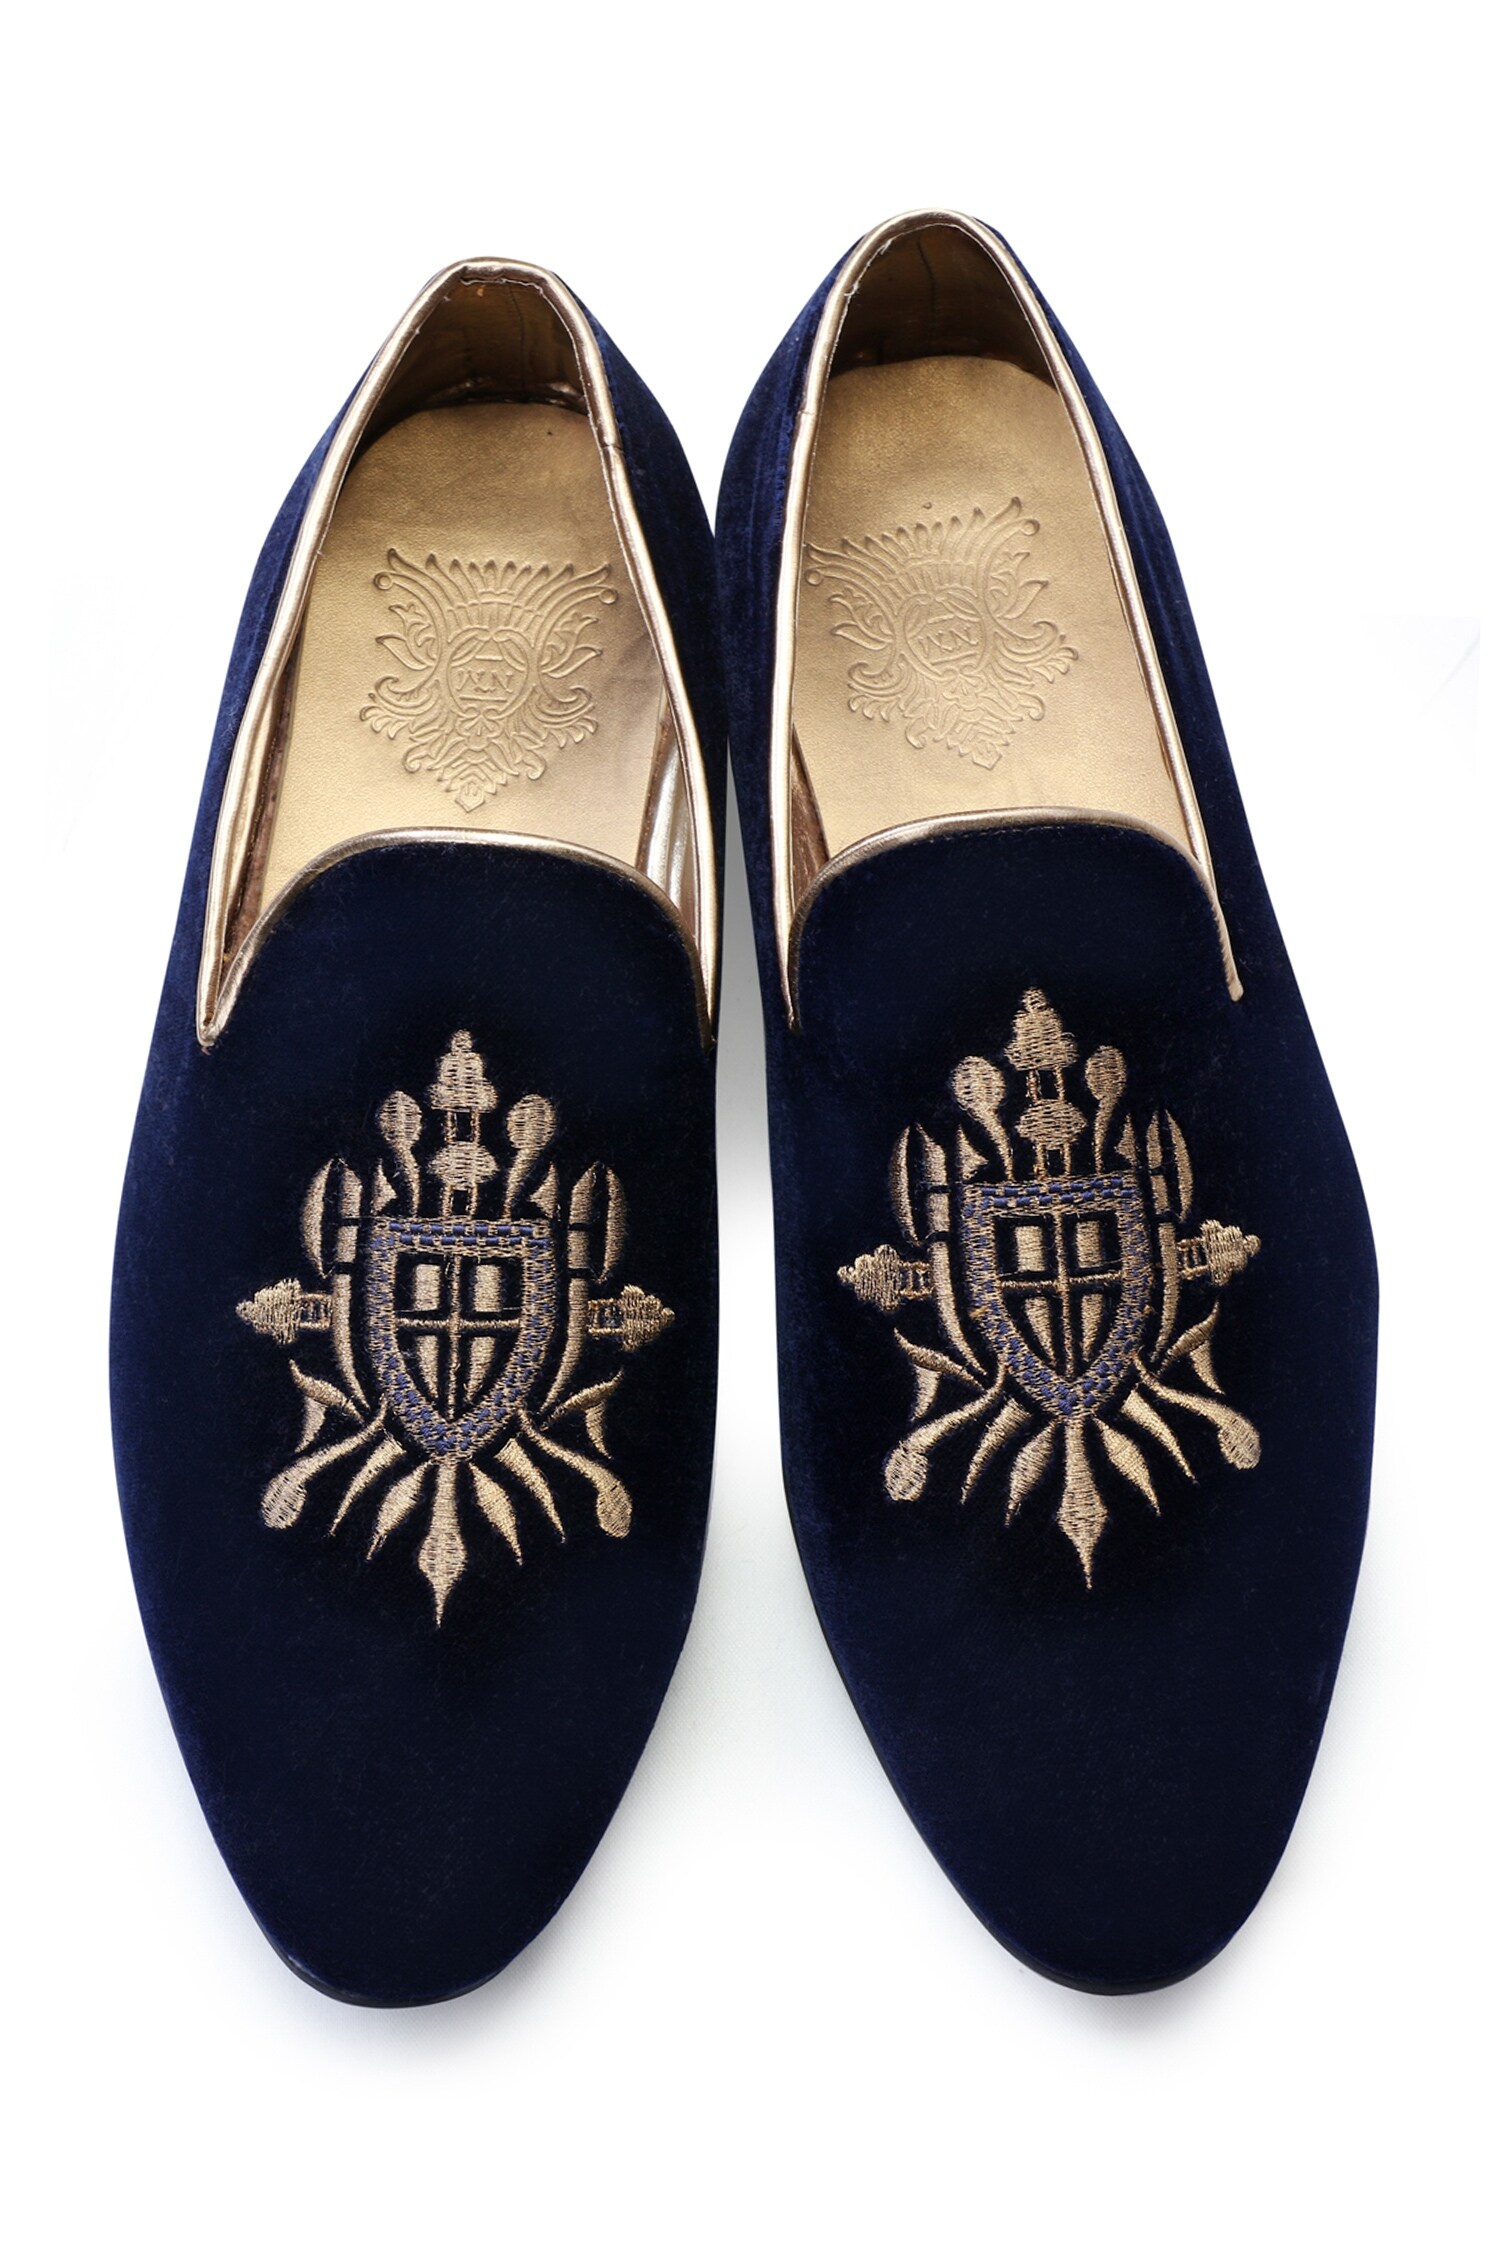 Buy Hitech Fashion Blue Velvet Slipper for Mens 11 UKin at Amazonin